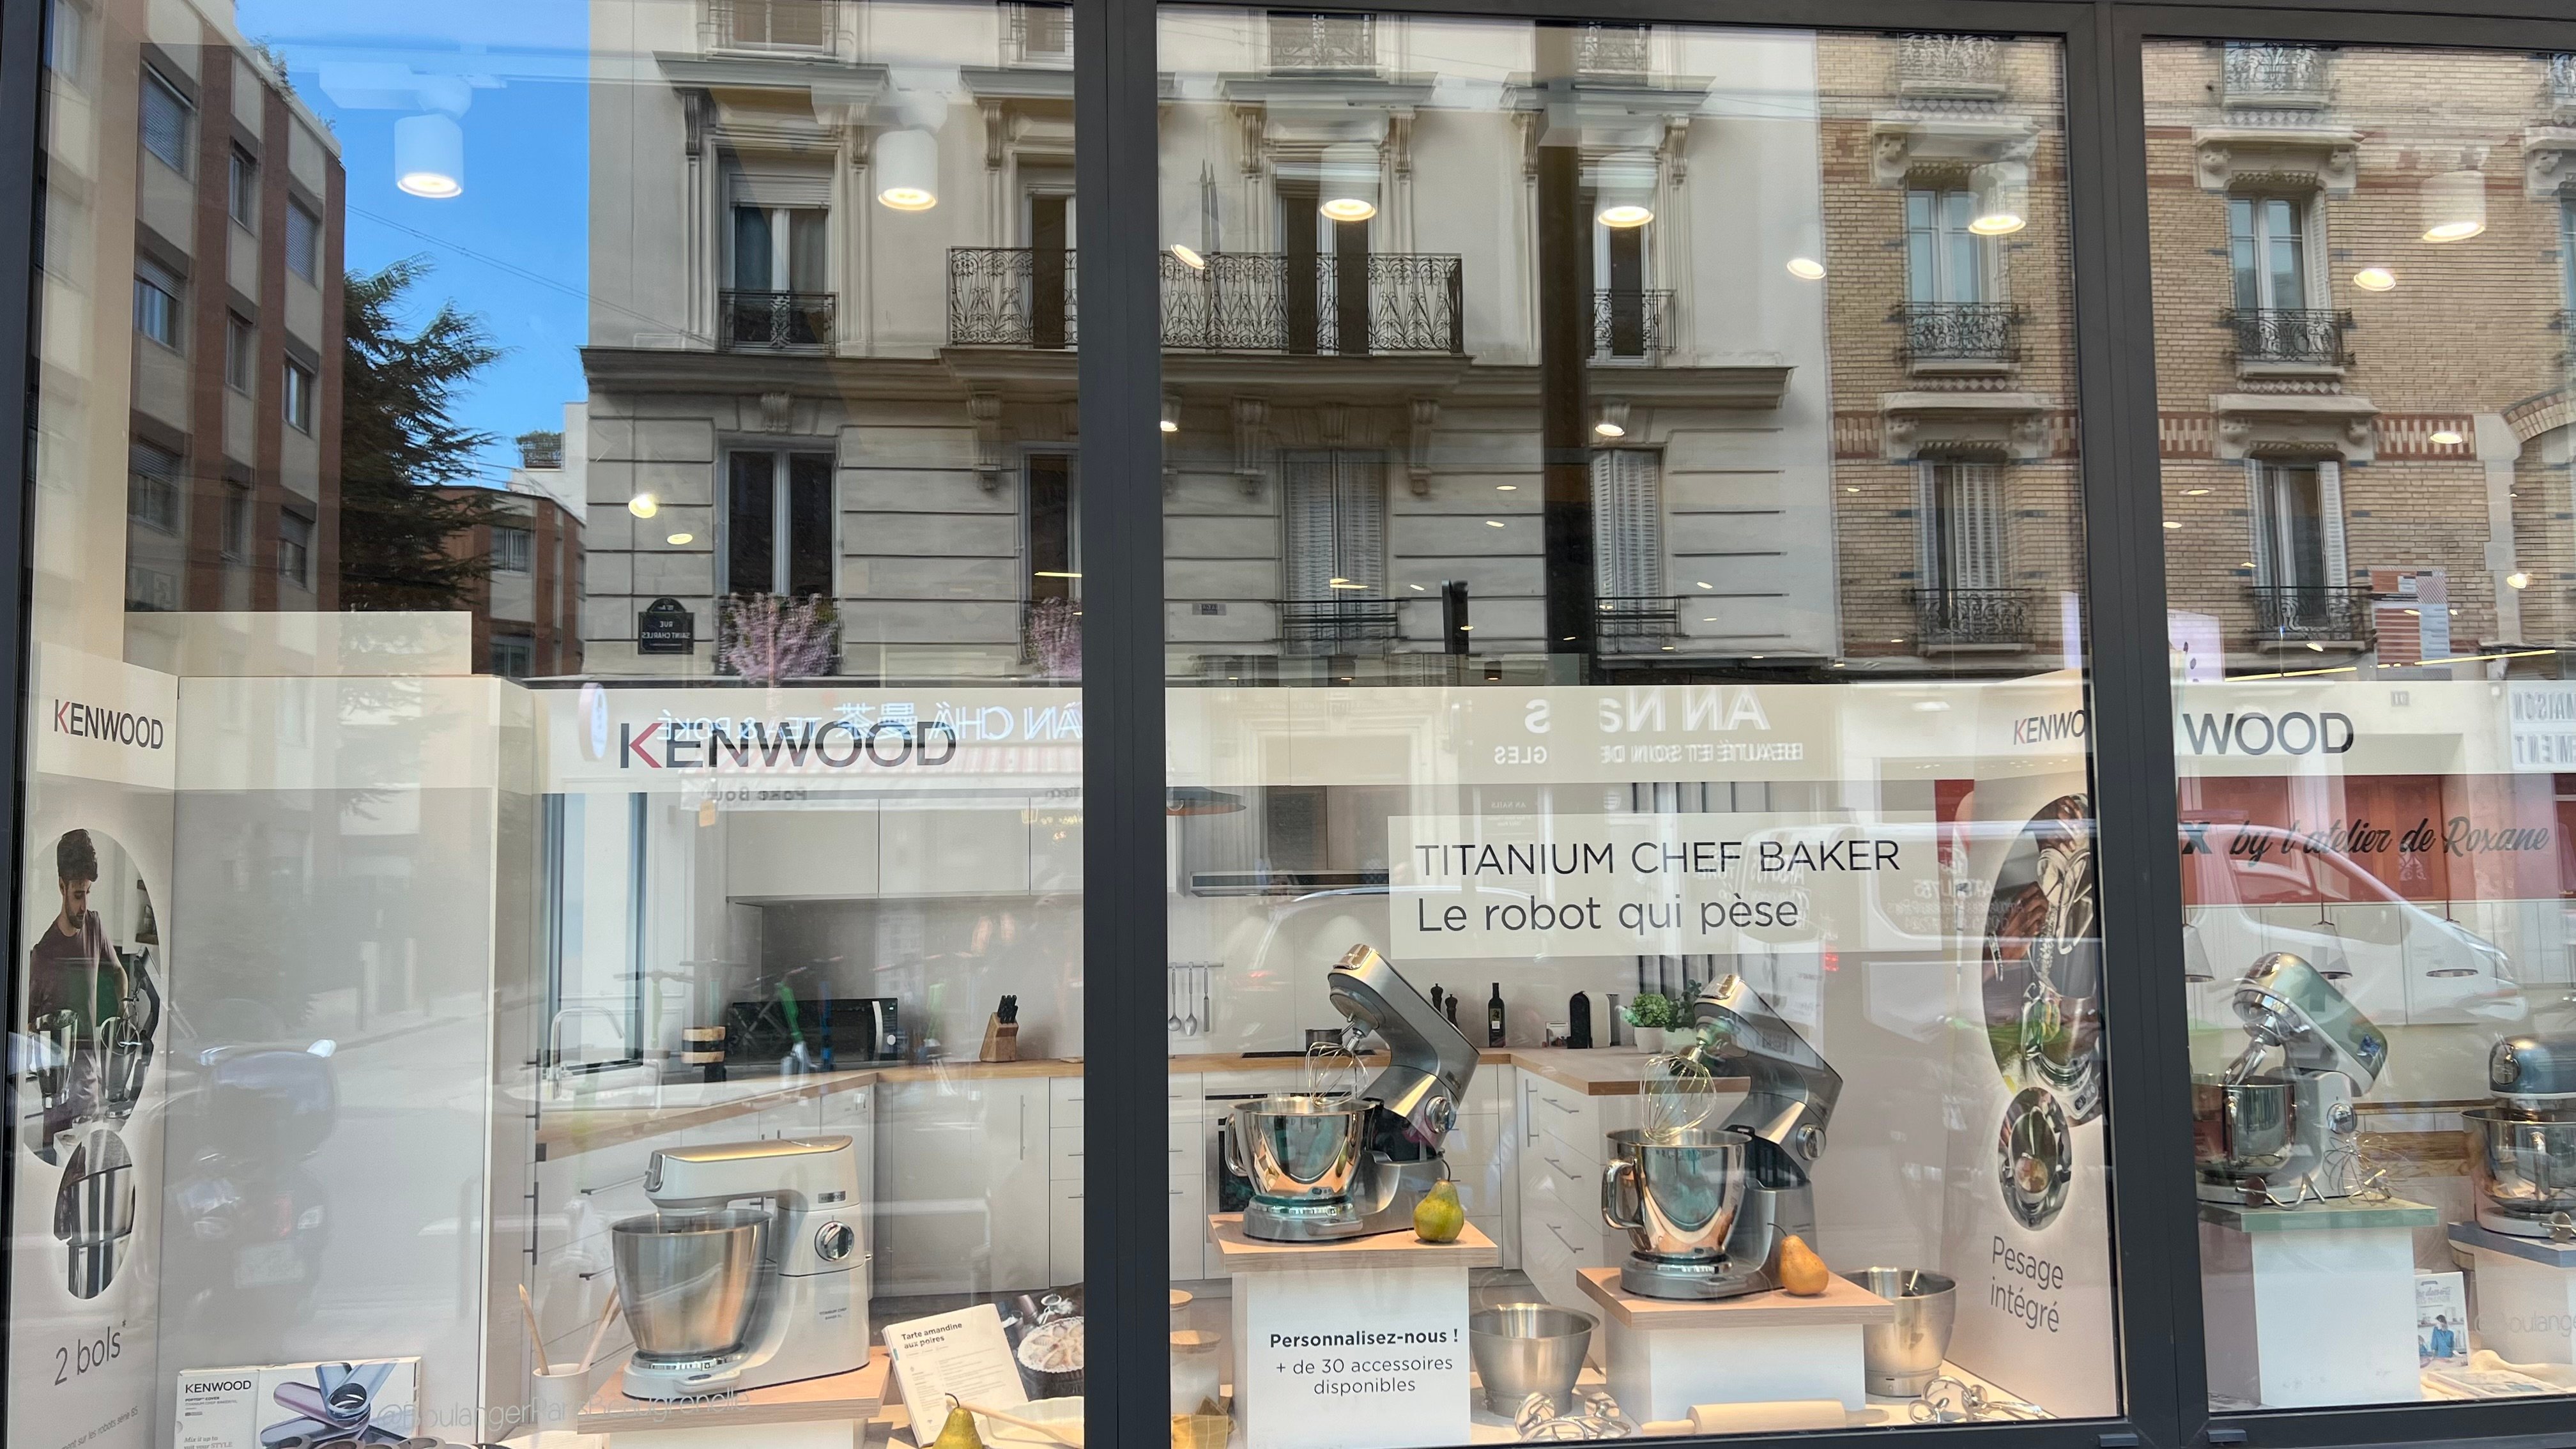 Vitrine KENWOOD de robots patissier à Boulanger Paris Beaugrenelle